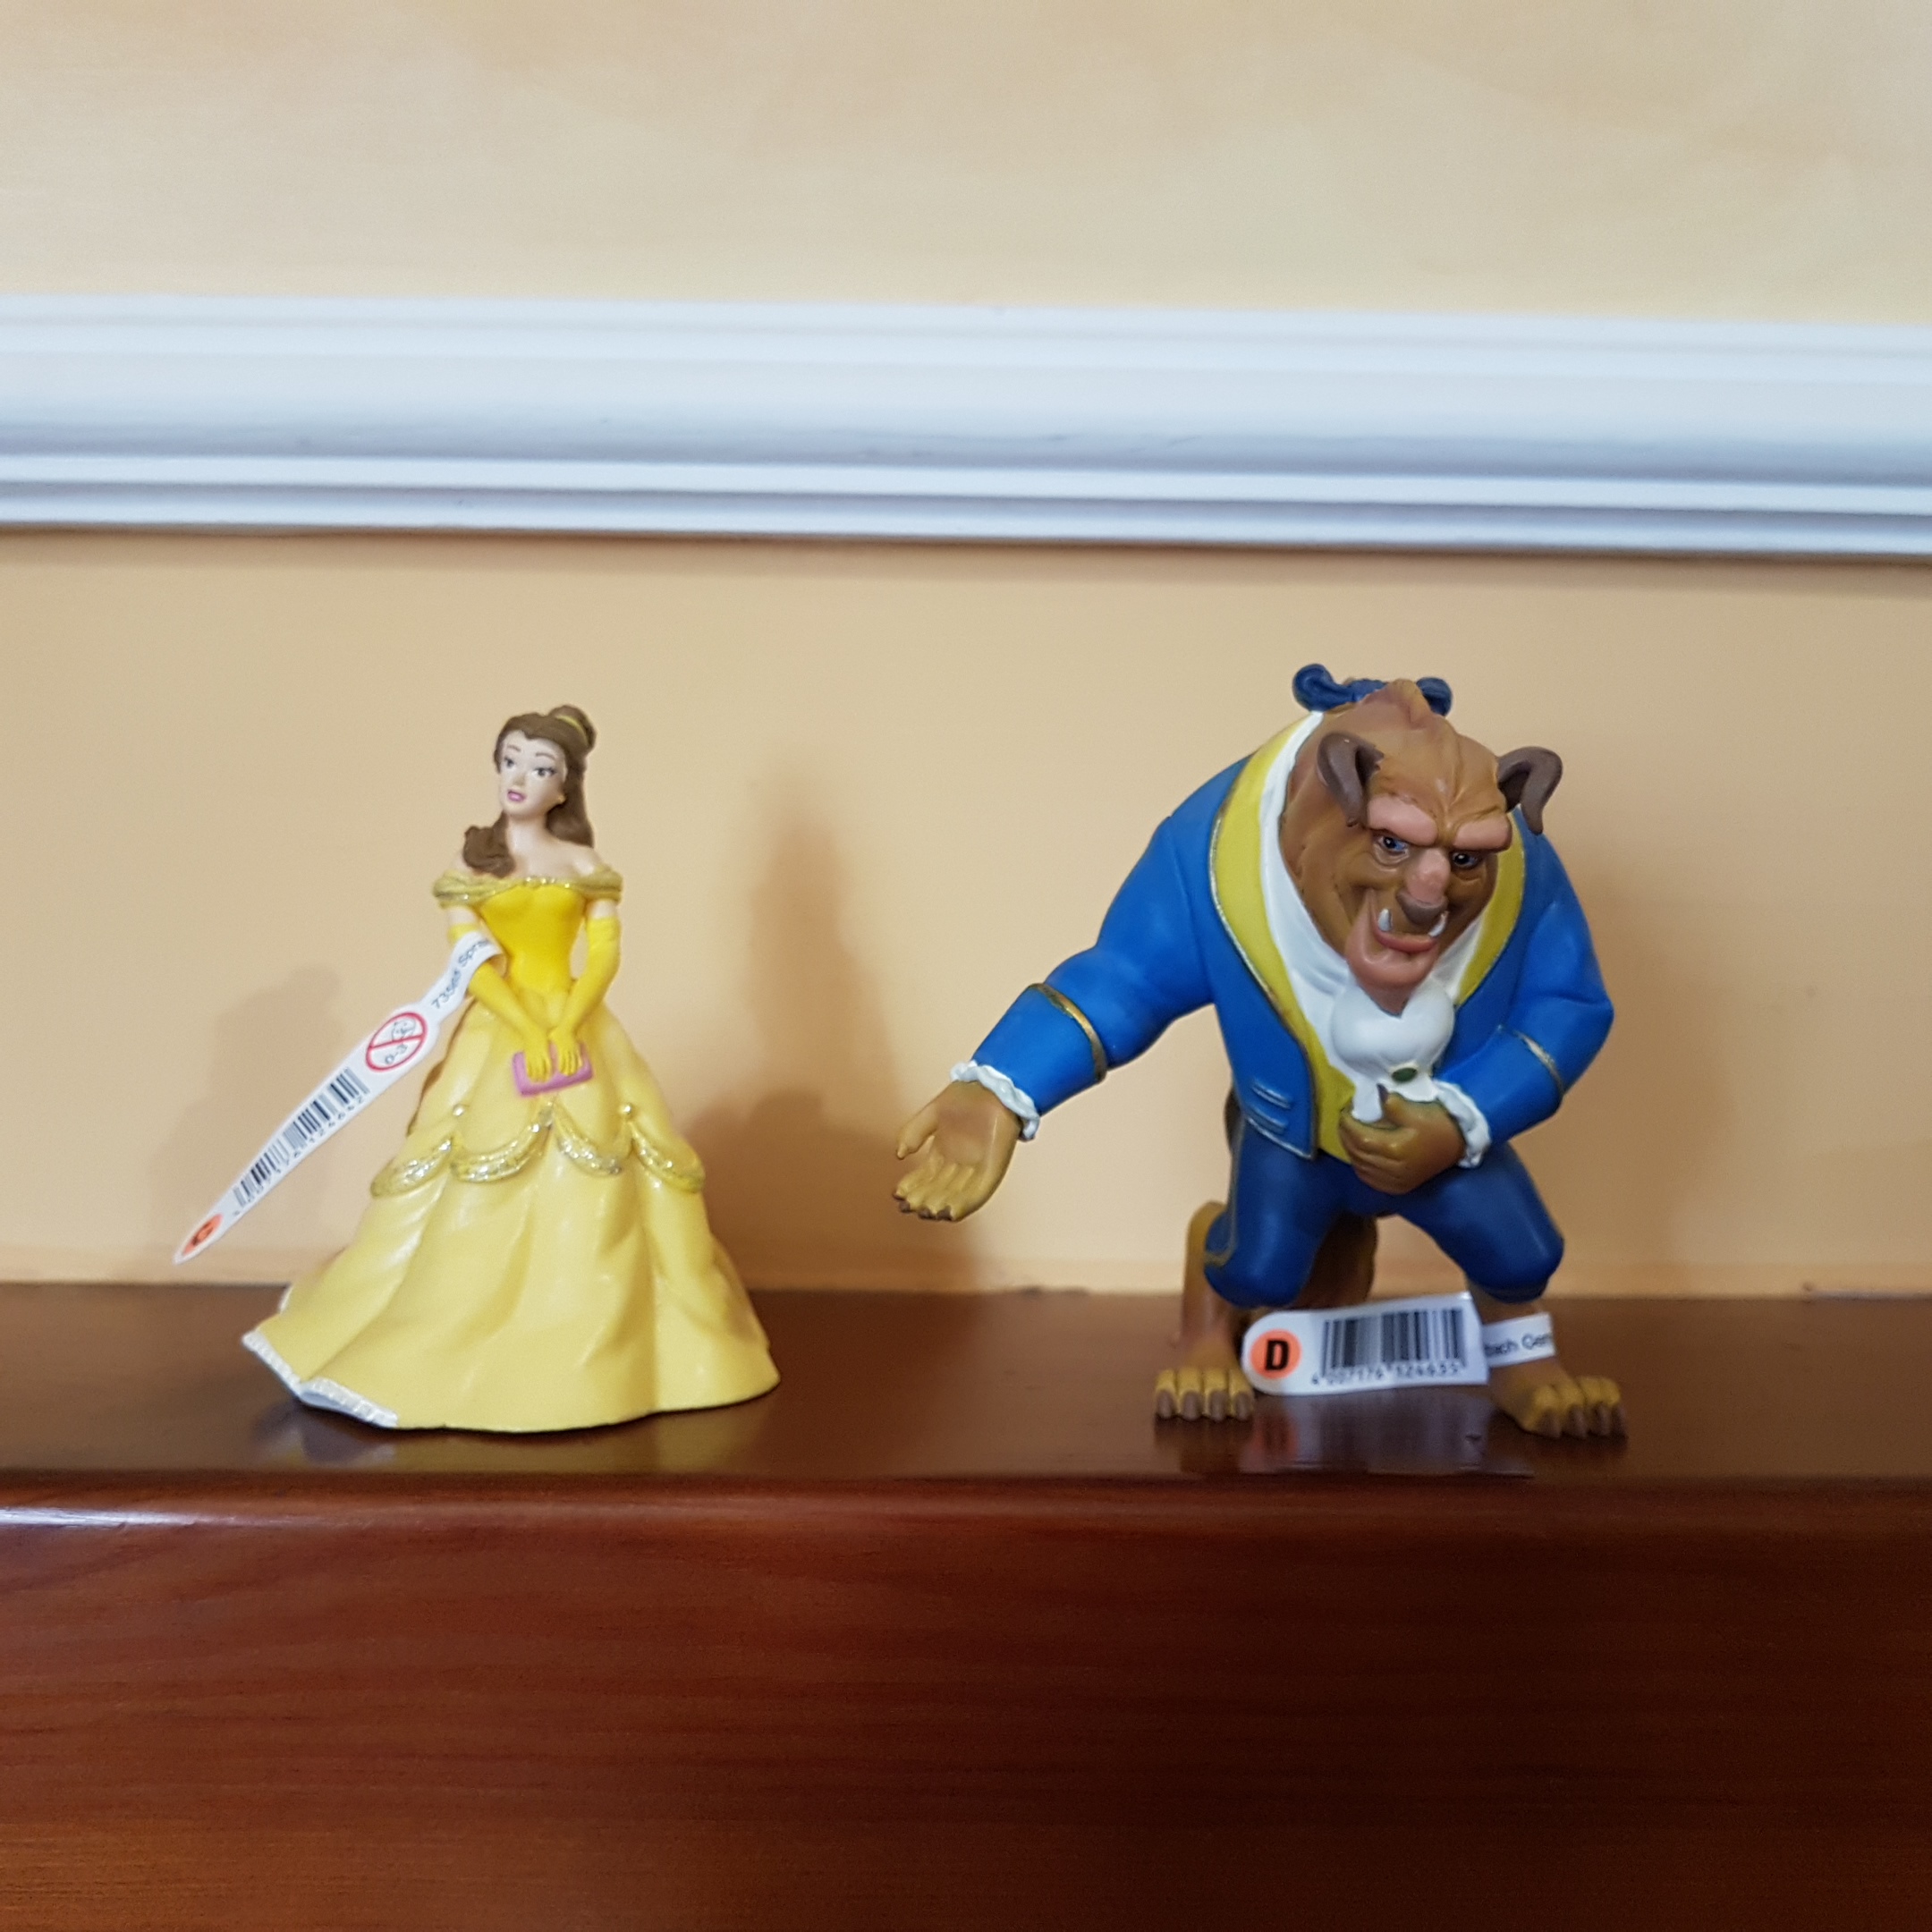 Muñecos figuras de La Bella y la Bestia de Walt Disney 1991